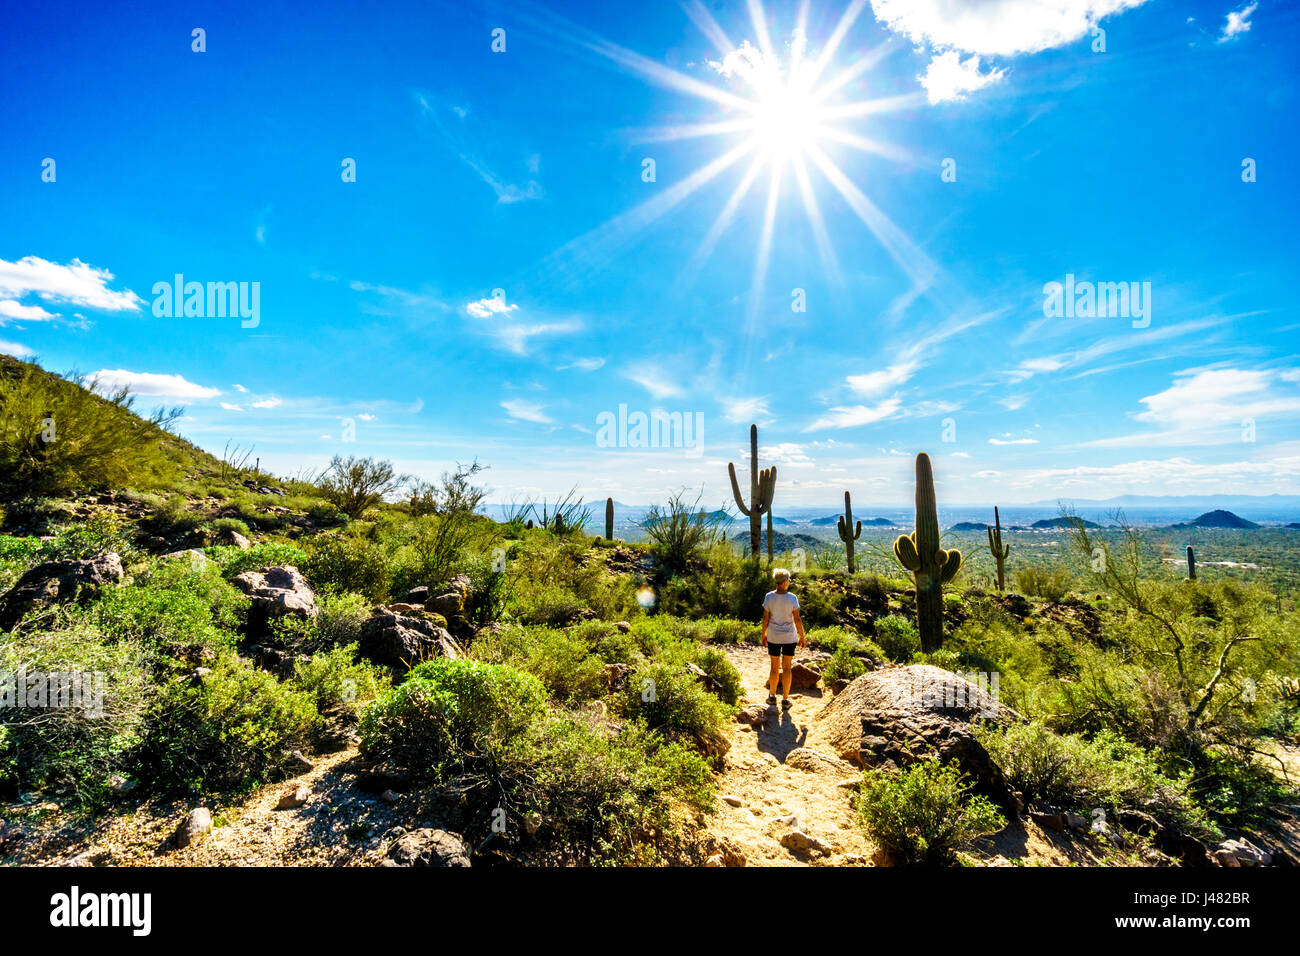 Donna su un escursione sul sentiero per la Grotta del Vento in montagna Usery sotto un sole splendente e la città di Phoenix nella Valle del Sole in background Foto Stock